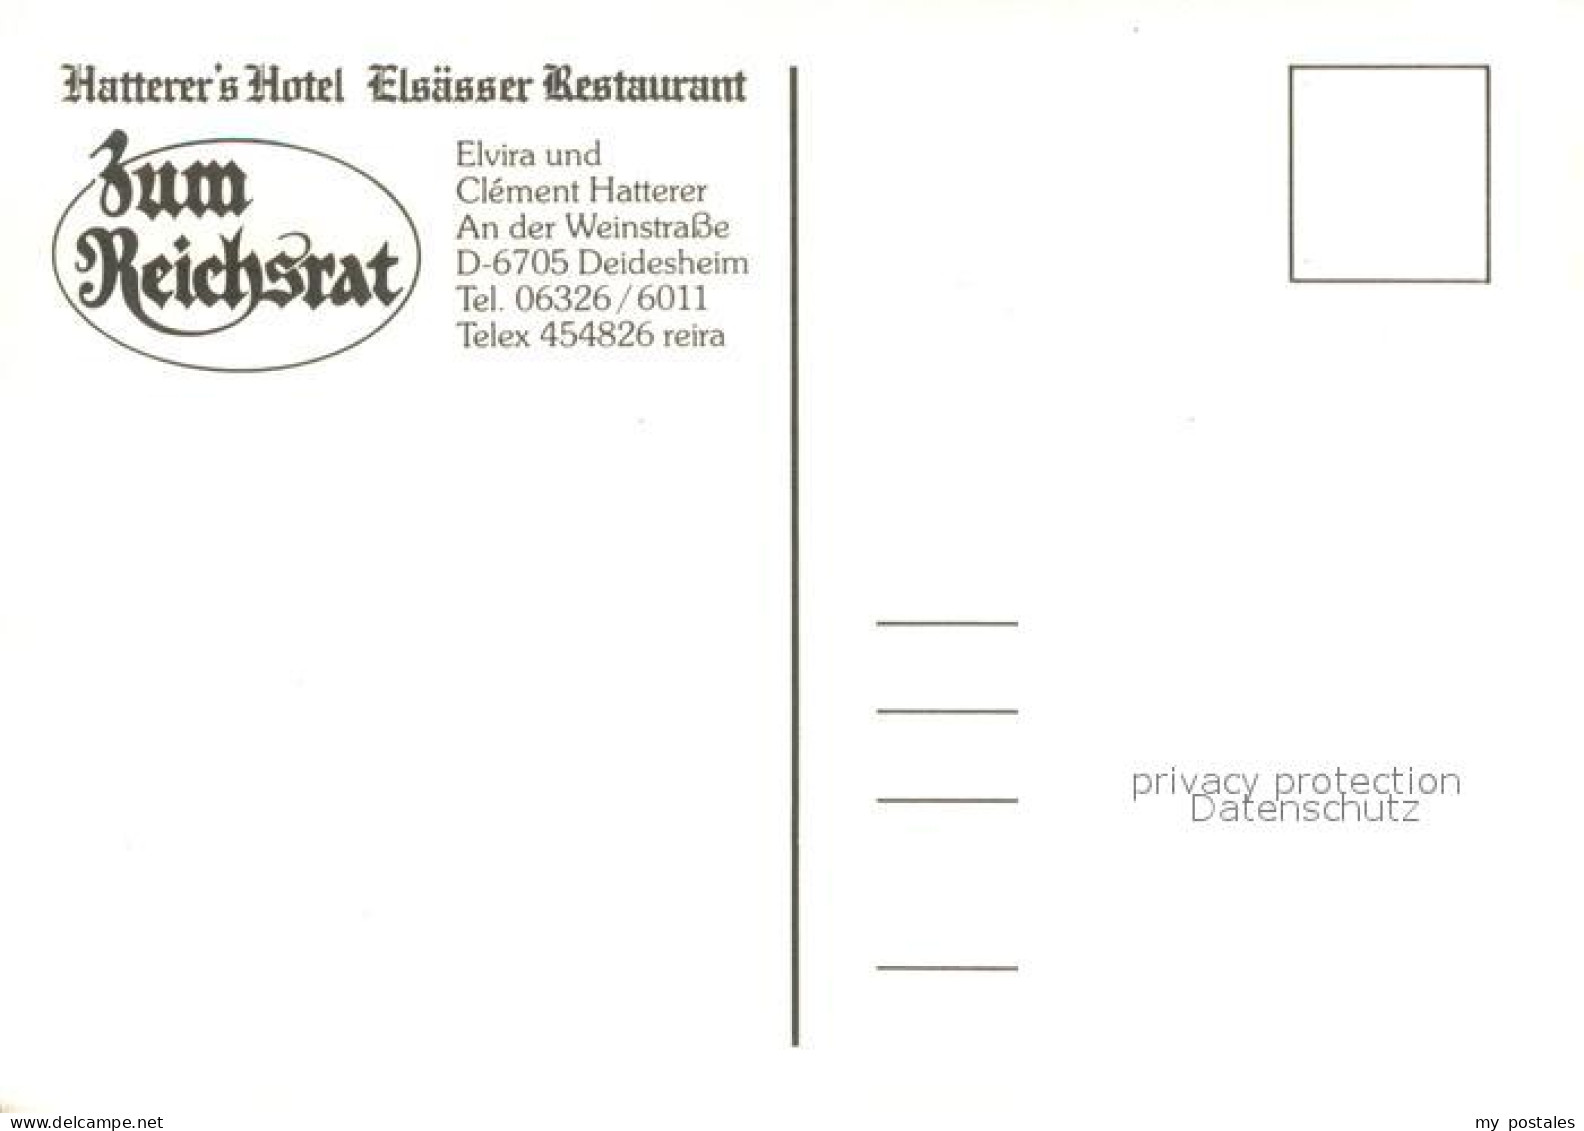 73635596 Deidesheim Hatterers Hotel Elsaesser Restaurant Zum Reichsrat Deideshei - Deidesheim